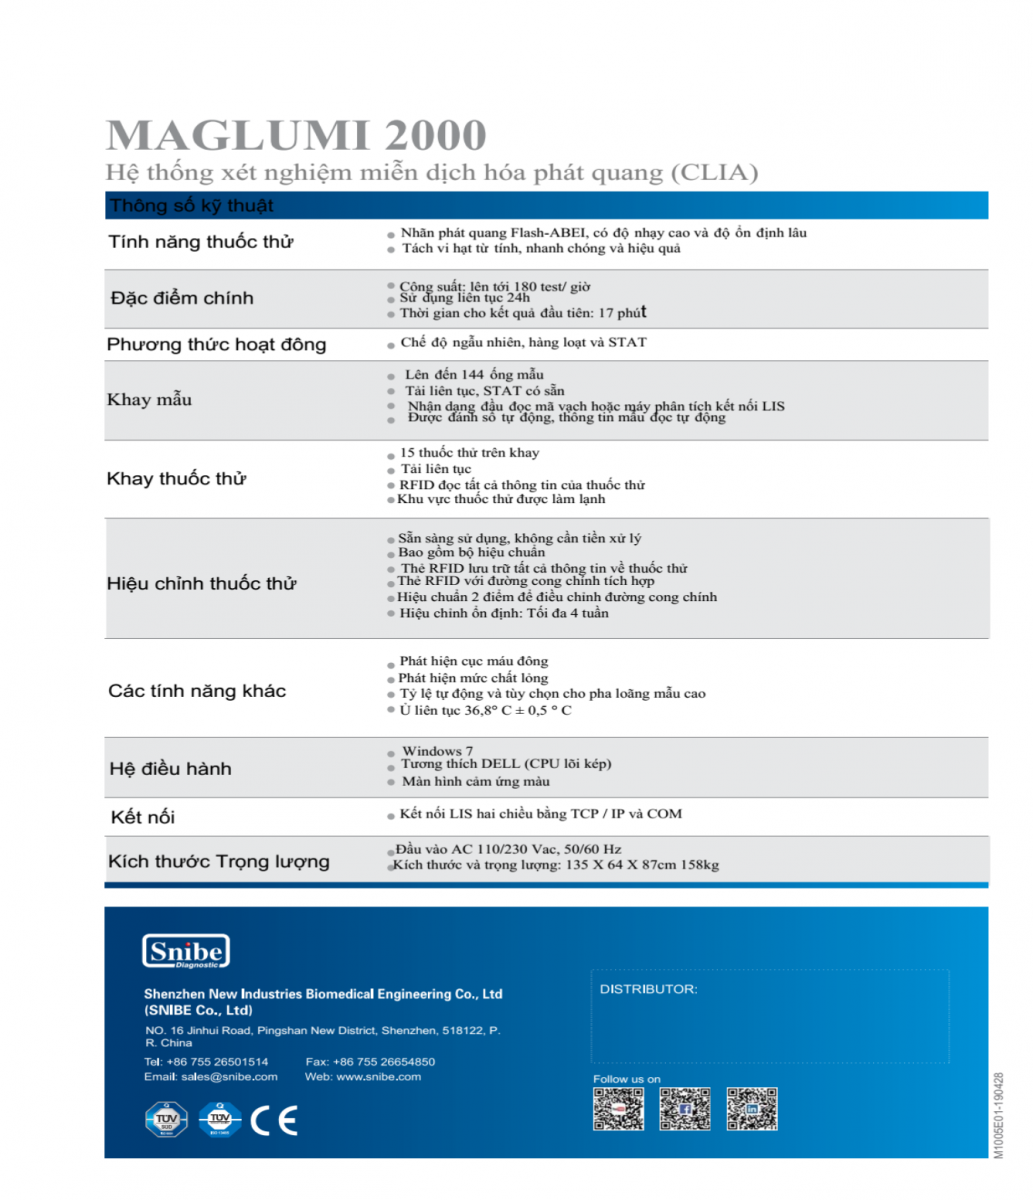 Máy miễn dịch tự động Maglumi 2000